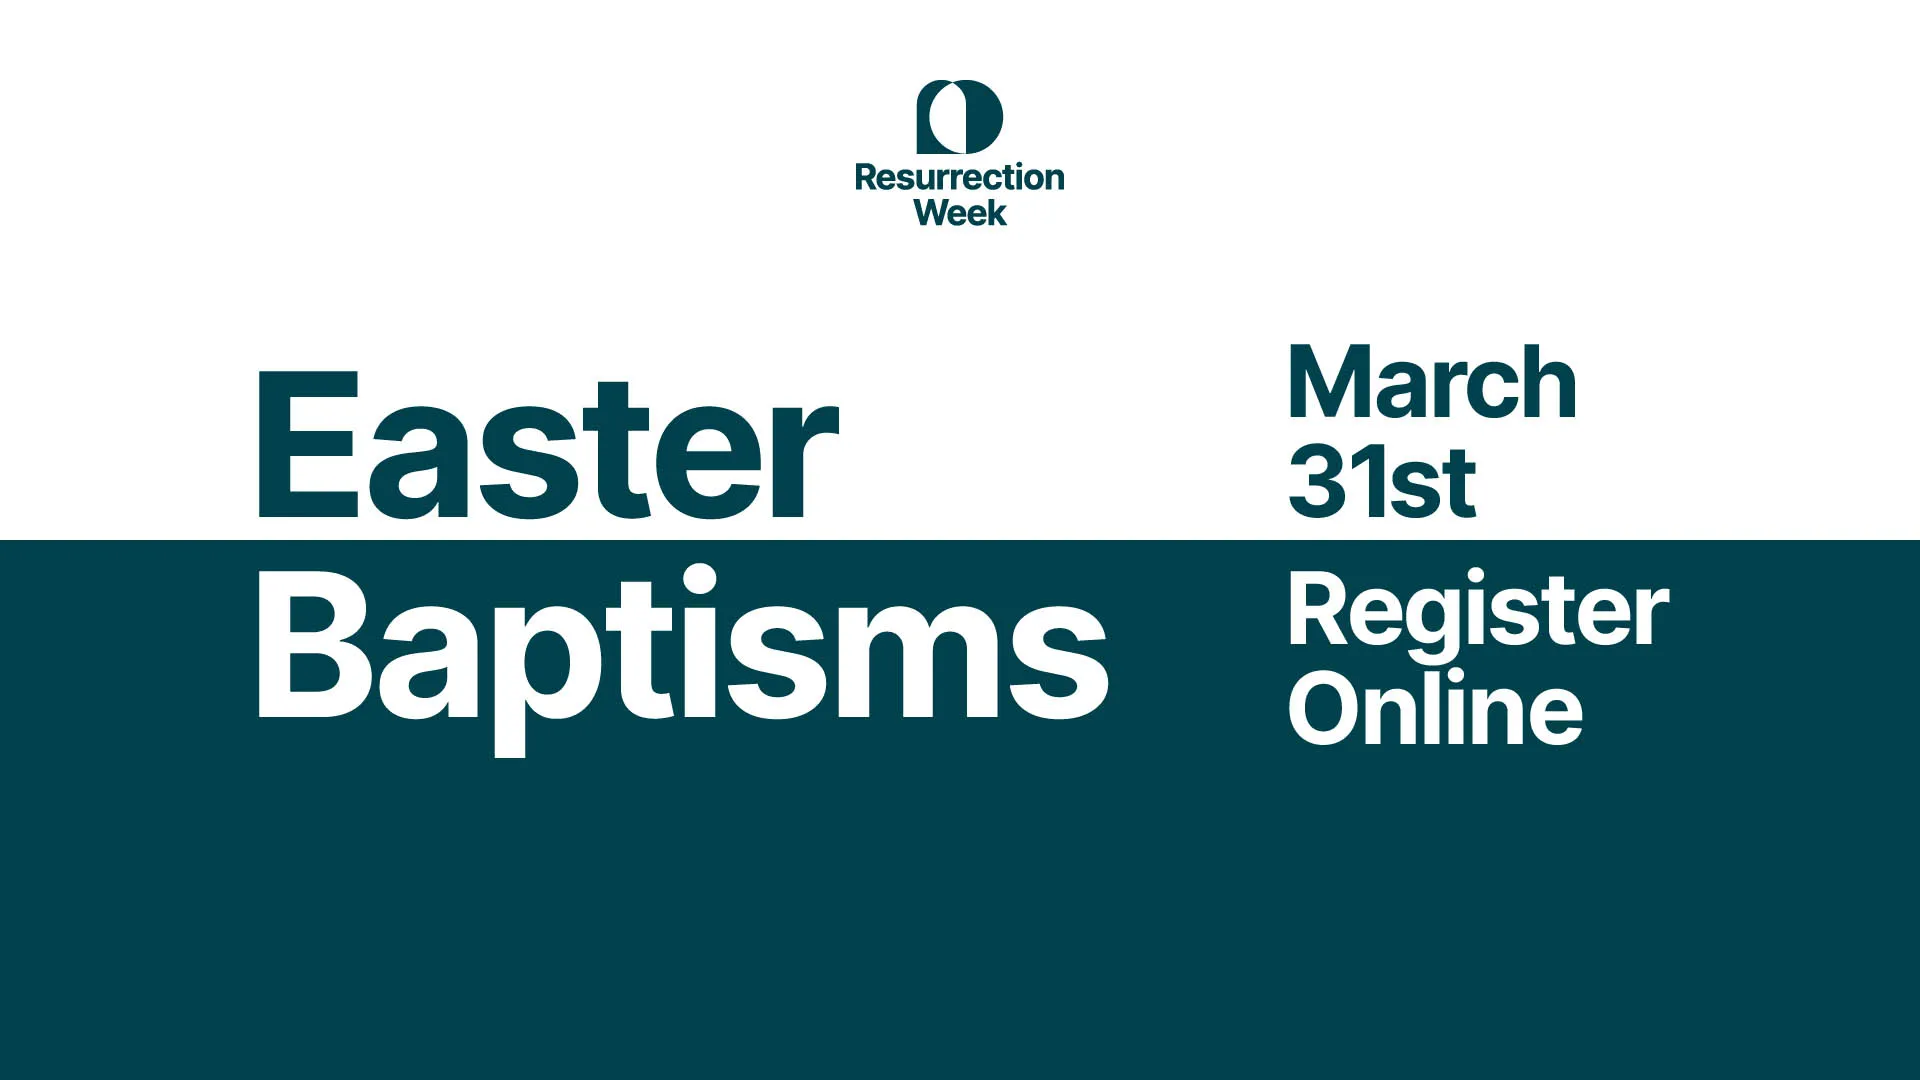 Easter Baptisms. March 31st. Register Online!